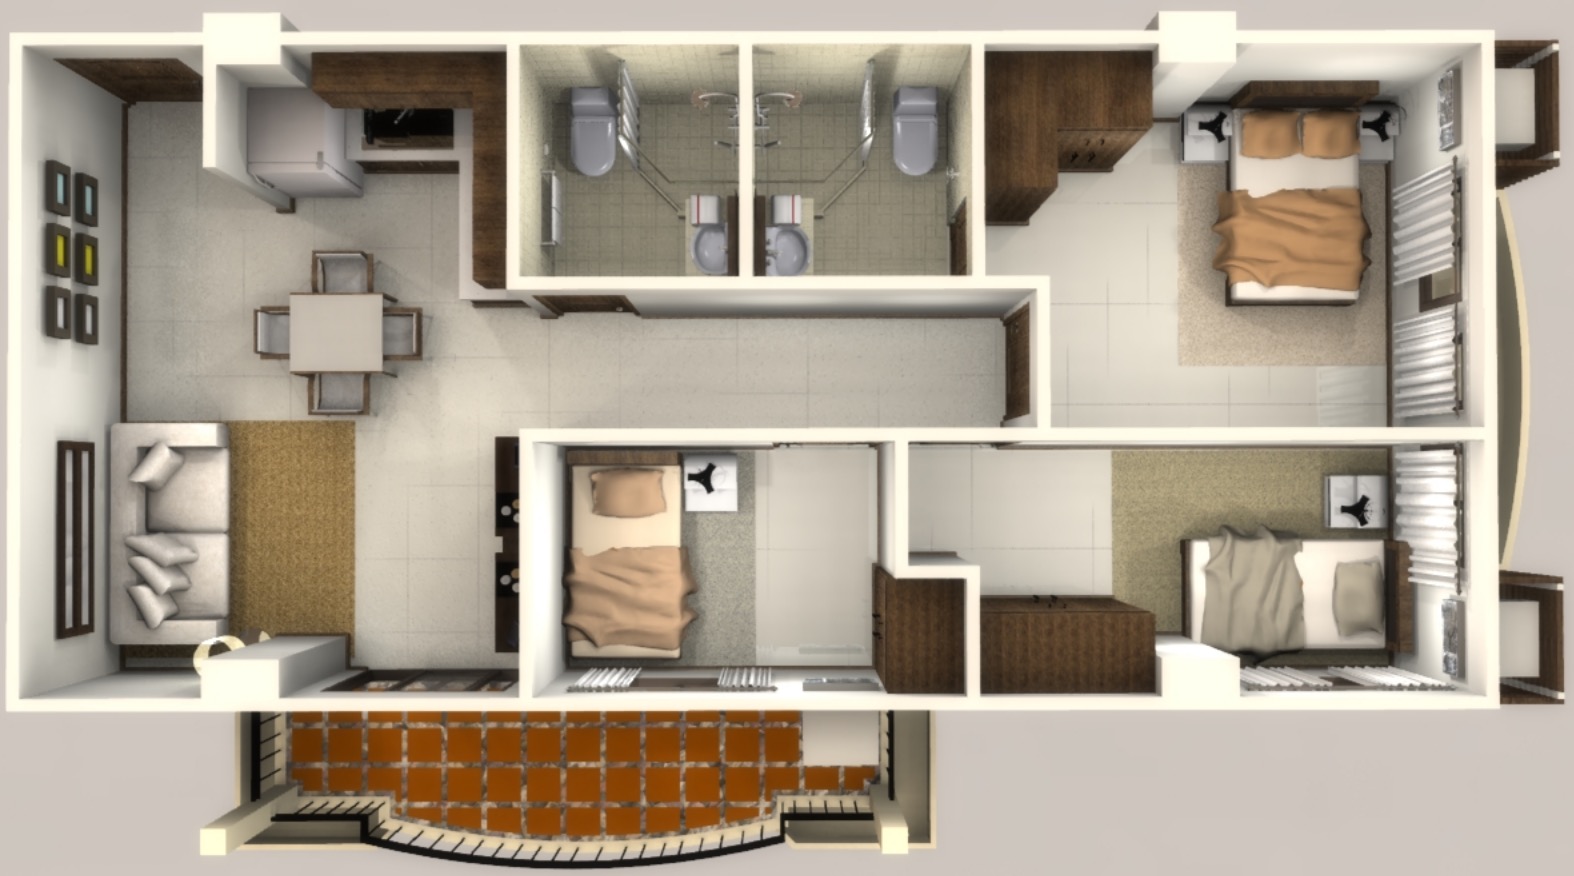 home floor plan